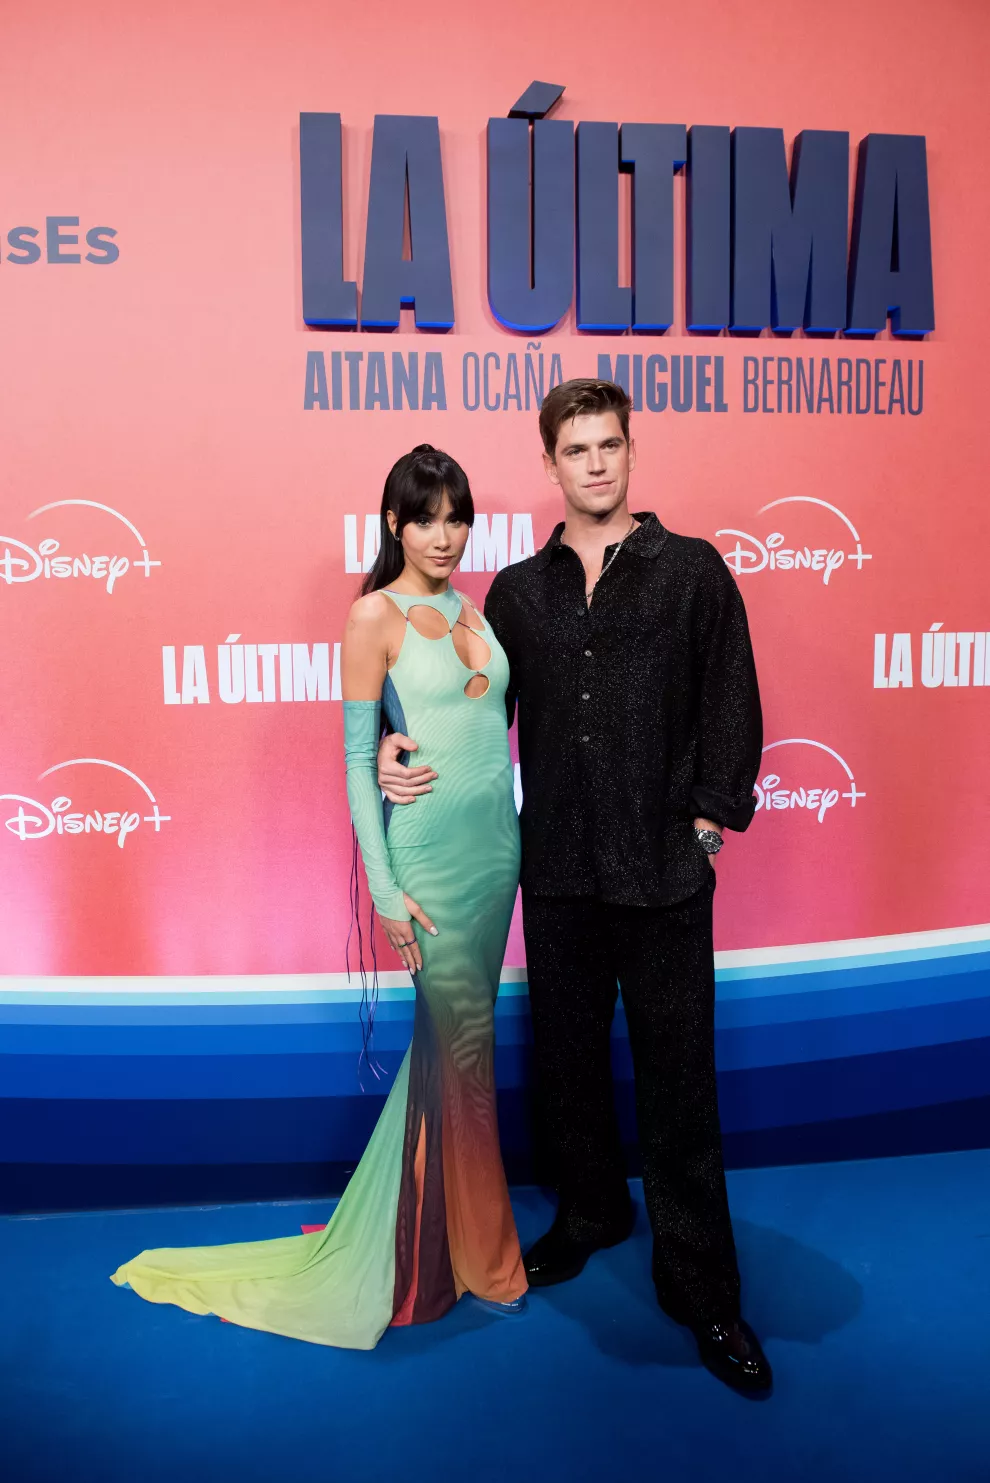 Aitana y Miguel Bernardeu en la alfombra roja de La Última.